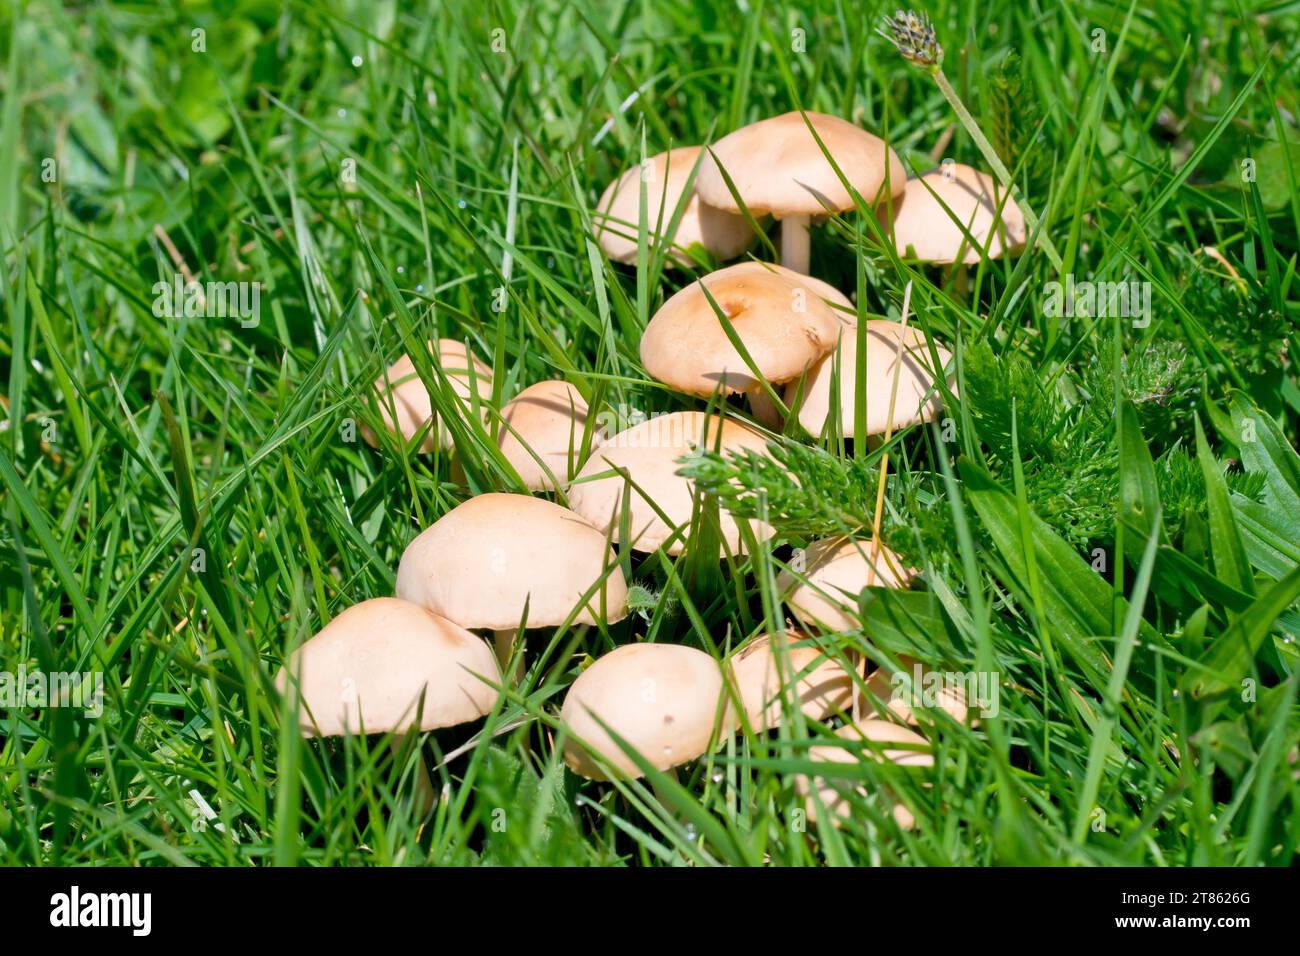 Gros plan d'une grappe de champignons brun pâle, les corps fructifiants des champignons, qui remontent à travers l'herbe d'un parc local. Banque D'Images